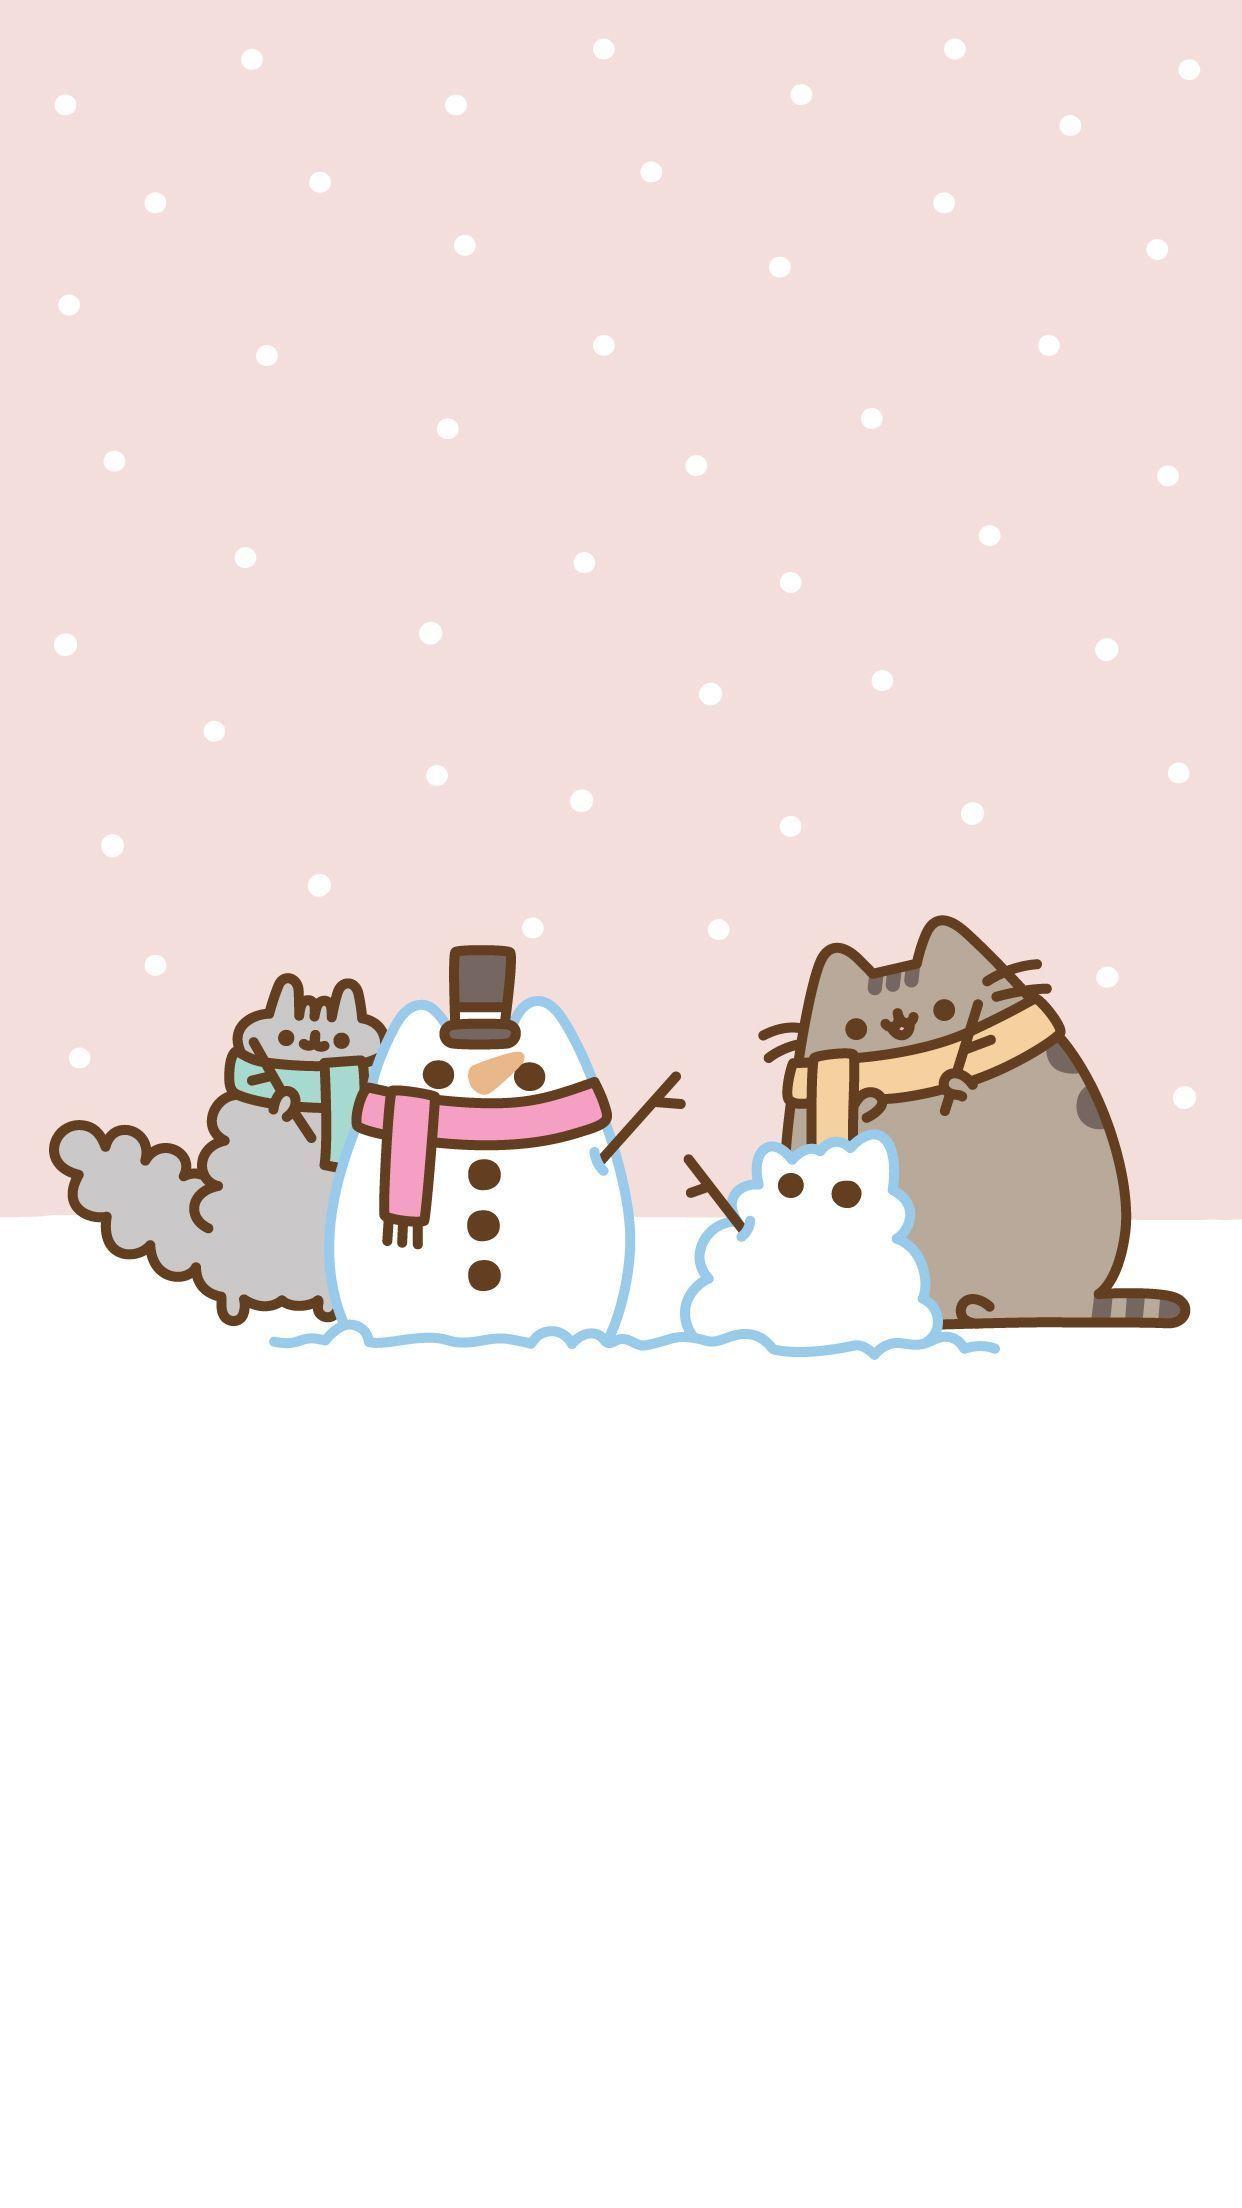 Bạn yêu mèo và yêu Giáng sinh chứ? Những hình nền mèo Giáng sinh sẽ khiến trái tim bạn tan chảy vì sự dễ thương và tinh nghịch. Bấm vào hình ảnh để khám phá thêm sự kết hợp hoàn hảo giữa cái cute của mèo và không khí festive của Giáng sinh.